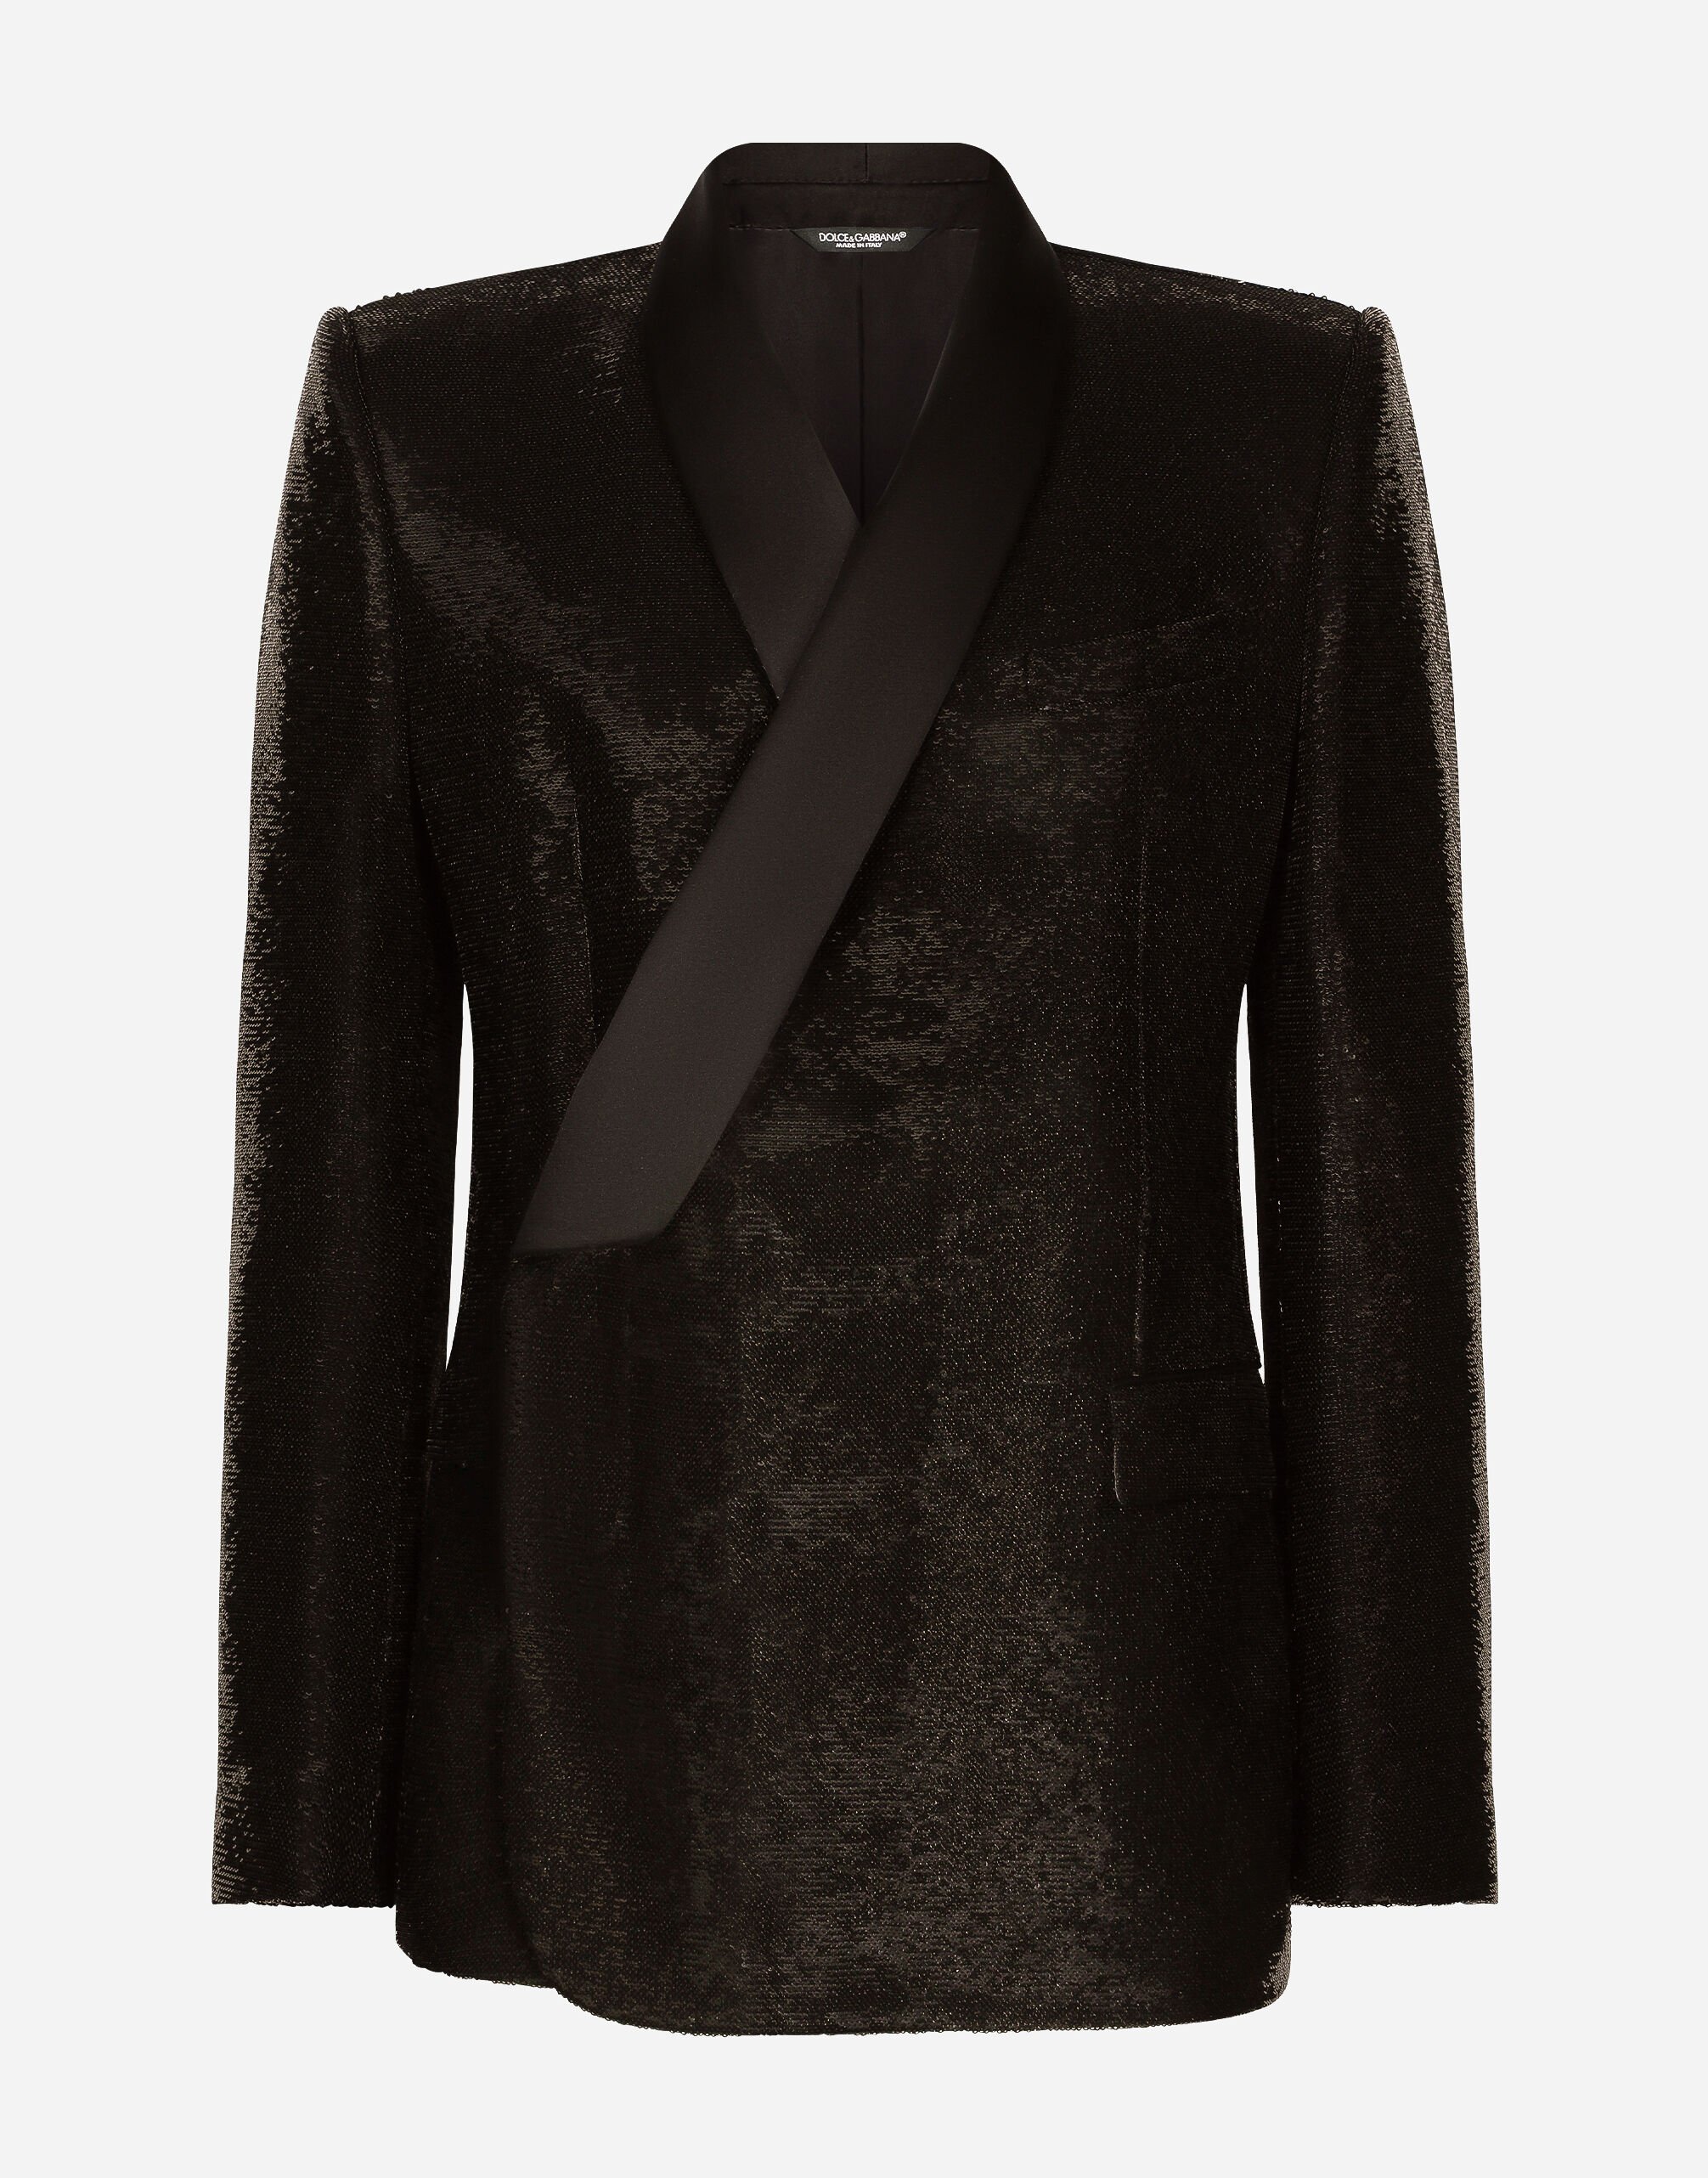 Dolce & Gabbana جاكيت توكسيدو بقصة سيسيلي وترتر وصف أزرار مفرد أسود A10792A1203